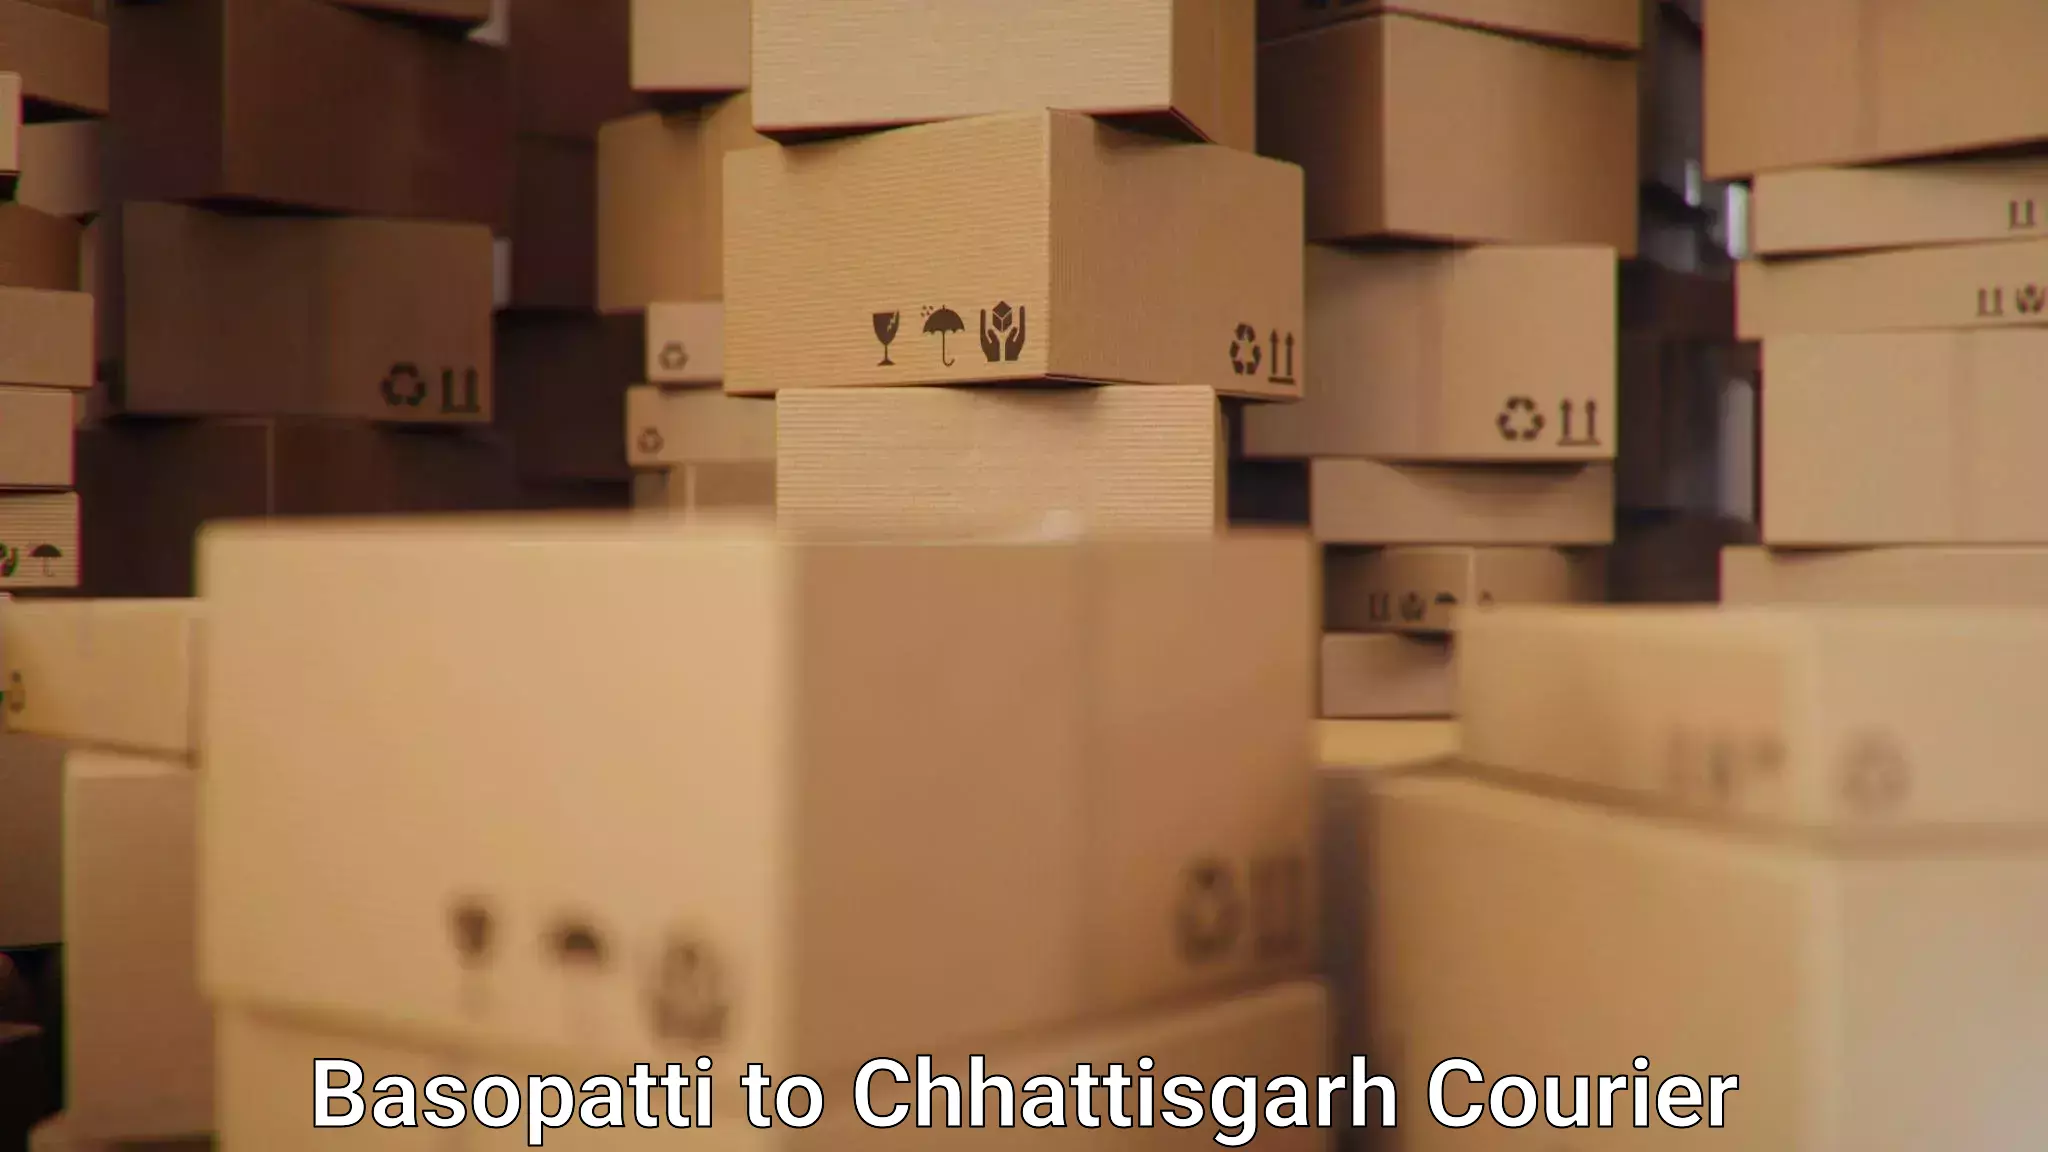 Automated parcel services Basopatti to Chhattisgarh